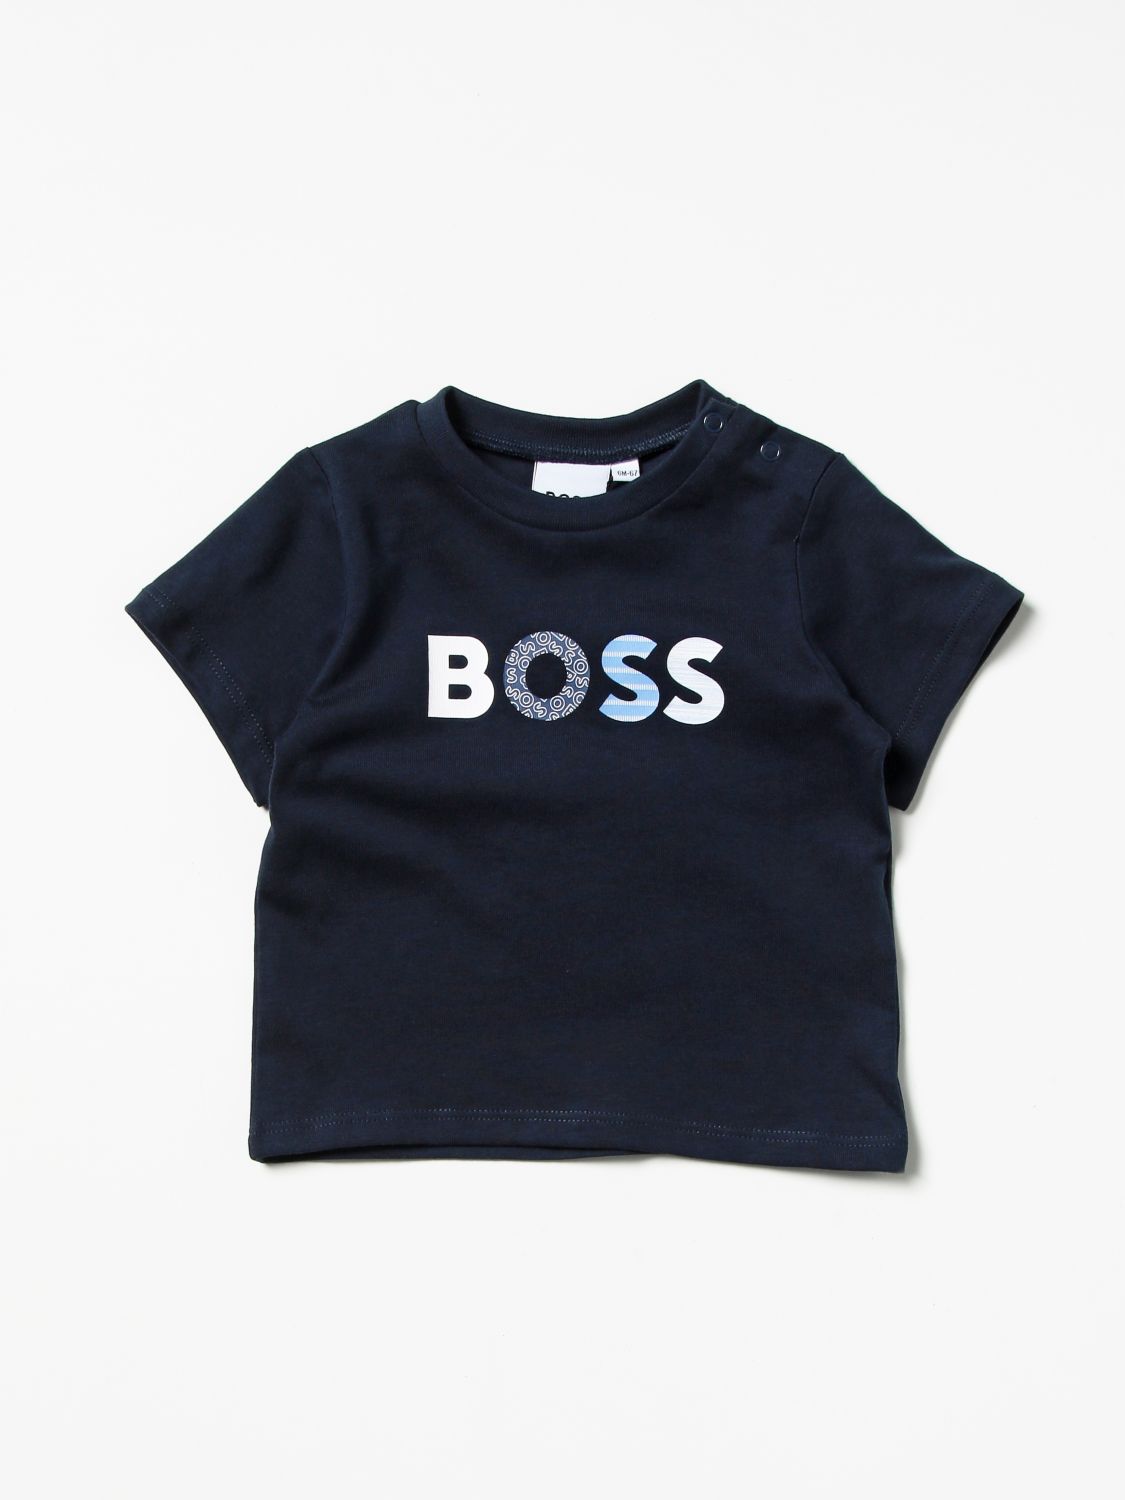 T-shirt Hugo Boss: Hugo Boss t-shirt for baby navy 1